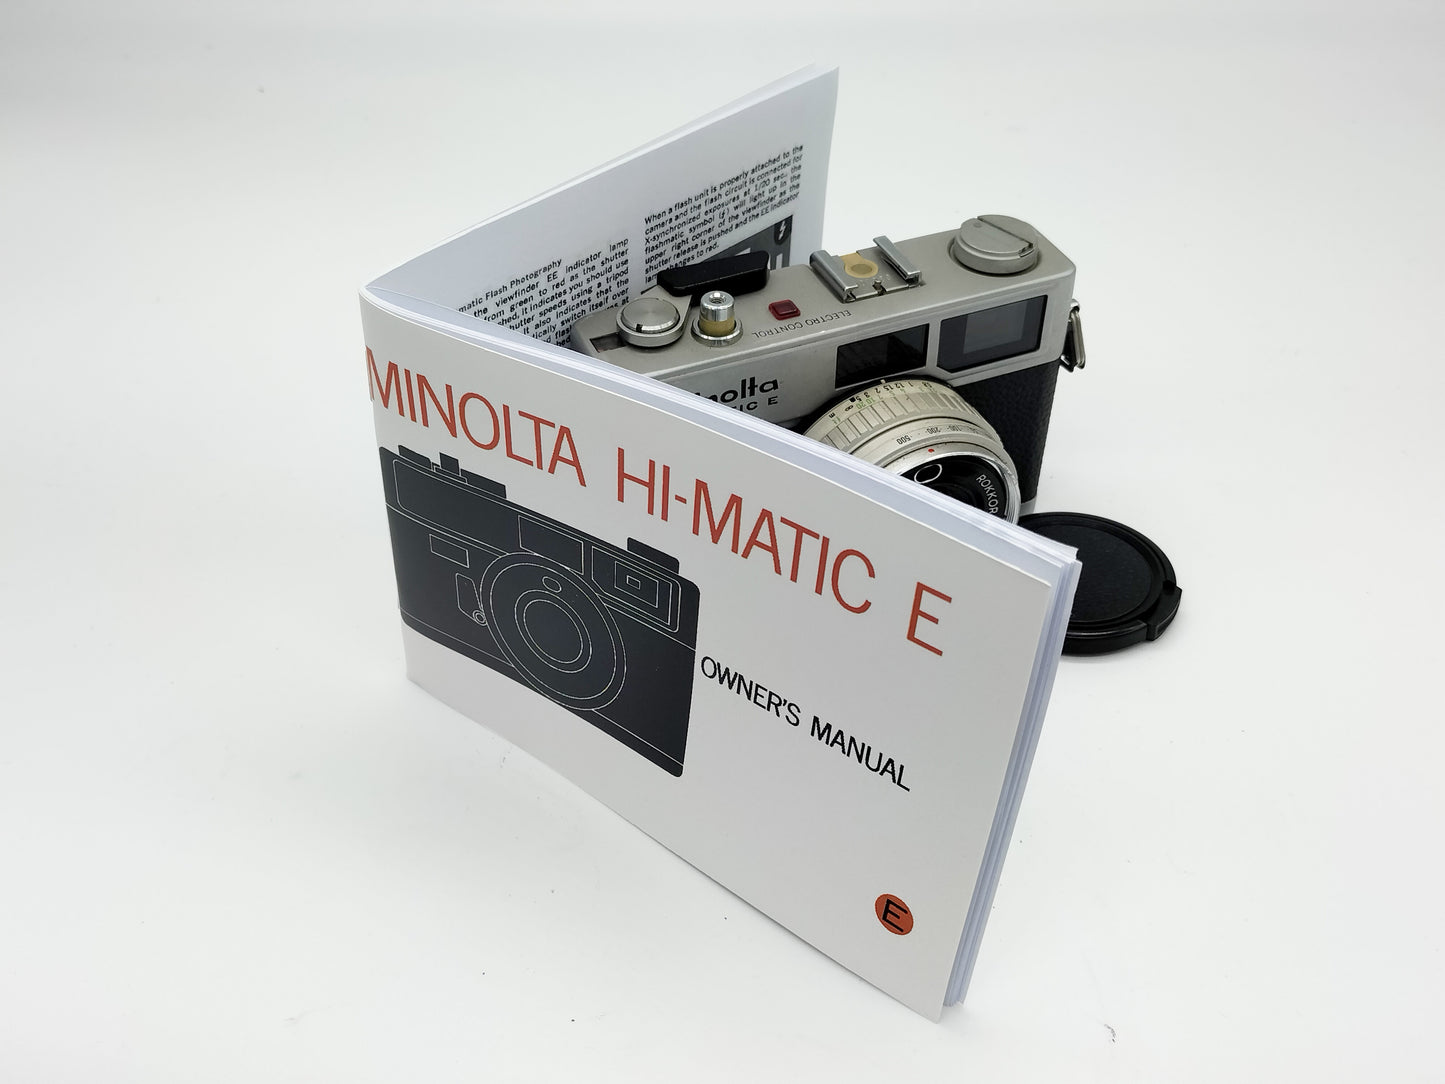 Minolta HiMatic E rangefinder camera